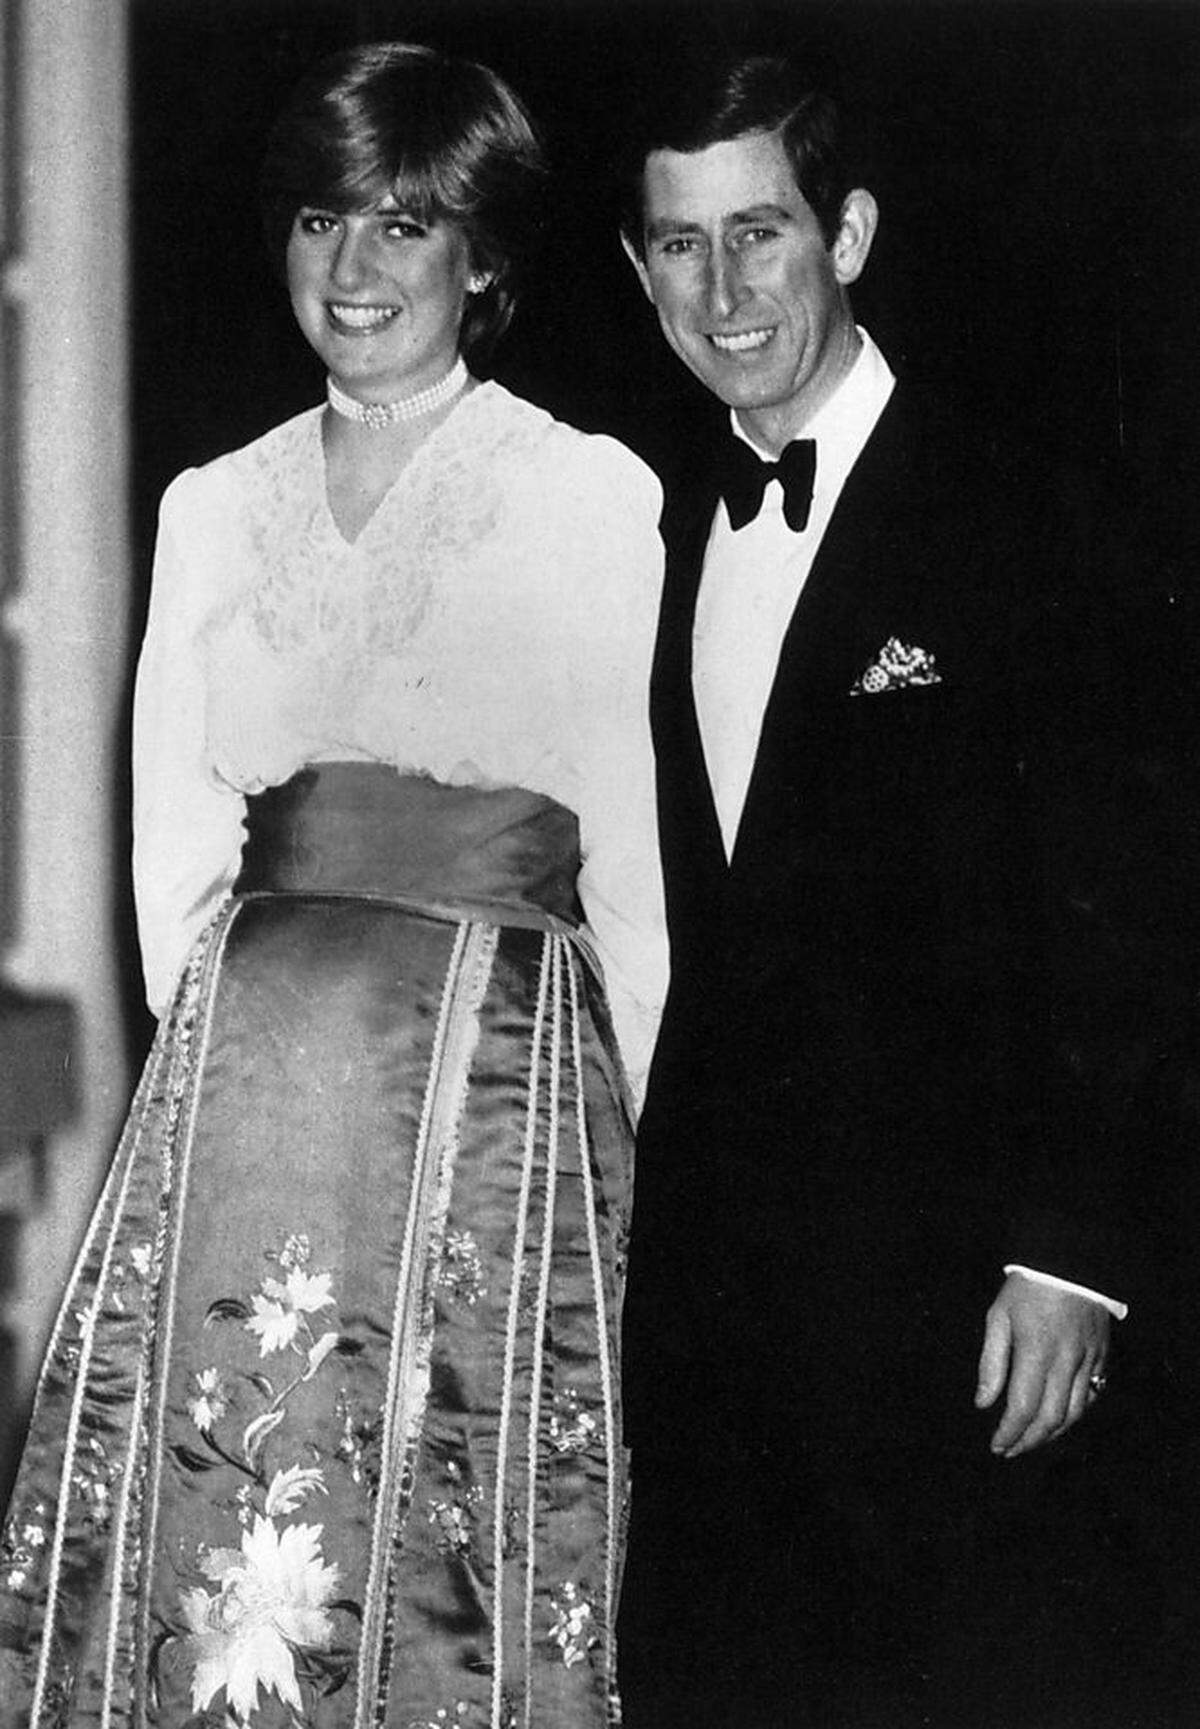 Kaum einer hätte eine solche Geschichte erwartet, als im Herbst 1980 bekannt wird, dass Prinz Charles - Thronfolger Königin Elizabeths und Fürst von Wales - die 19-jährige Kindergärtnerin Lady Diana Spencer datet: Man rechnet vielmehr mit einer braven Märchenprinzessin. Offenbar auch der Prinz, der zuvor schon eine ältere Schwester Dianas als Freundin hatte - die aber der Presse gegenüber zu plaudrig gewesen war. Diana hingegen ist nicht nur jung, sondern auch wahnsinnig schüchtern.